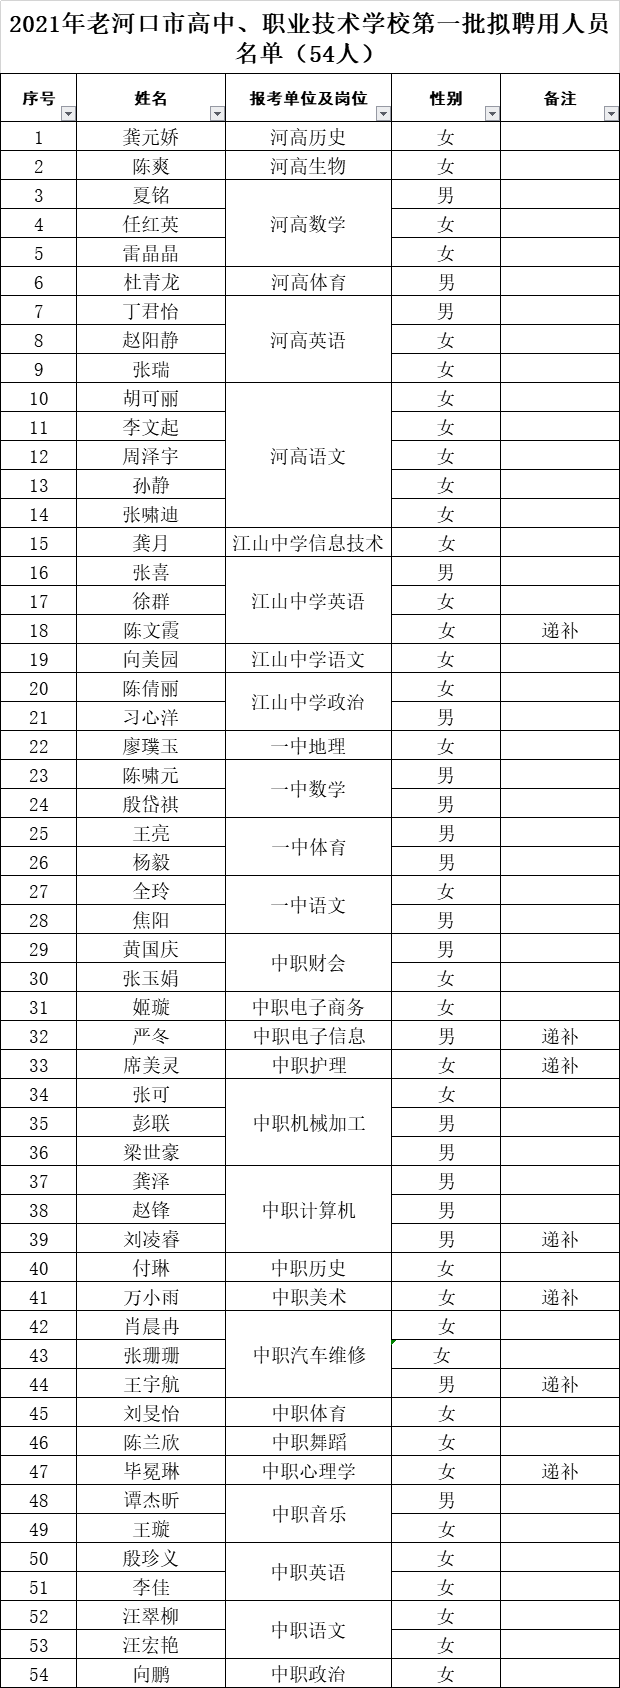 2021年襄阳老河口市高中、职业技术学校第一批拟聘用人员名单（54人）